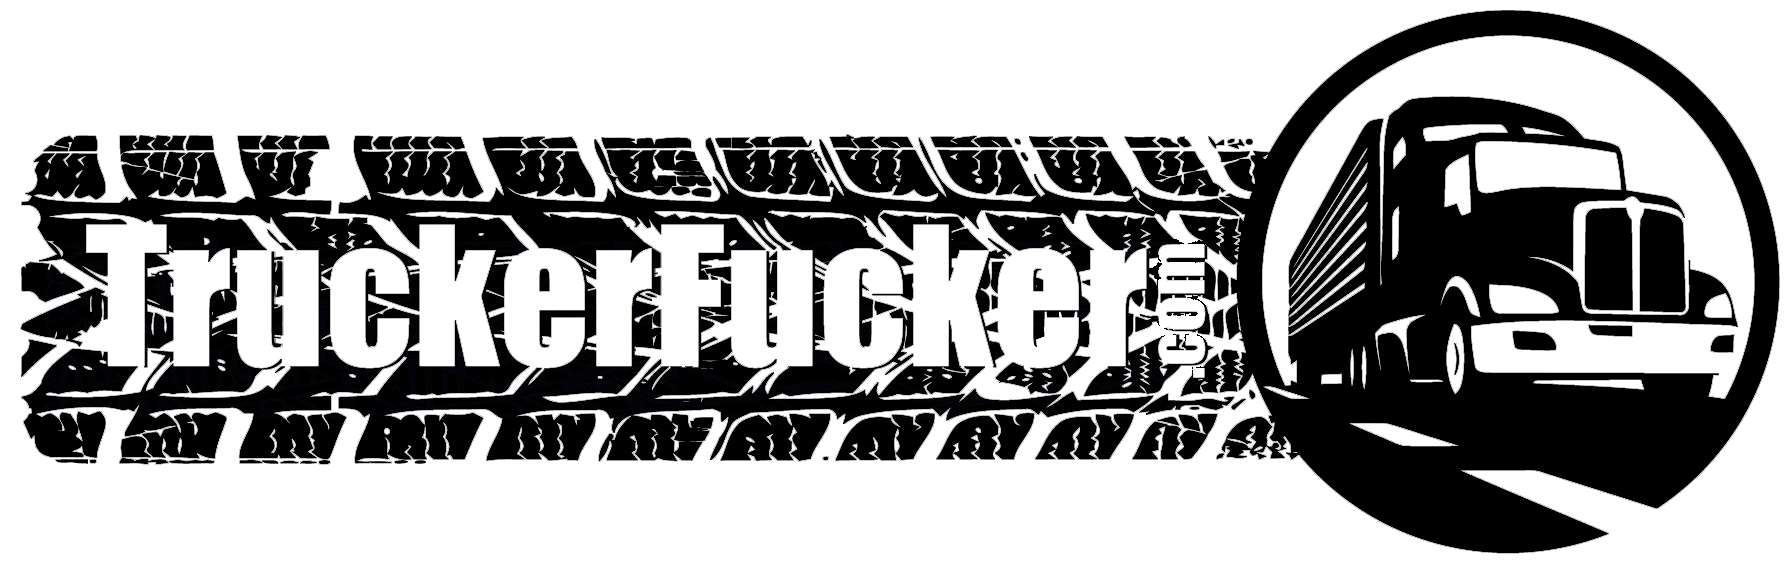 Truckerfucker.com